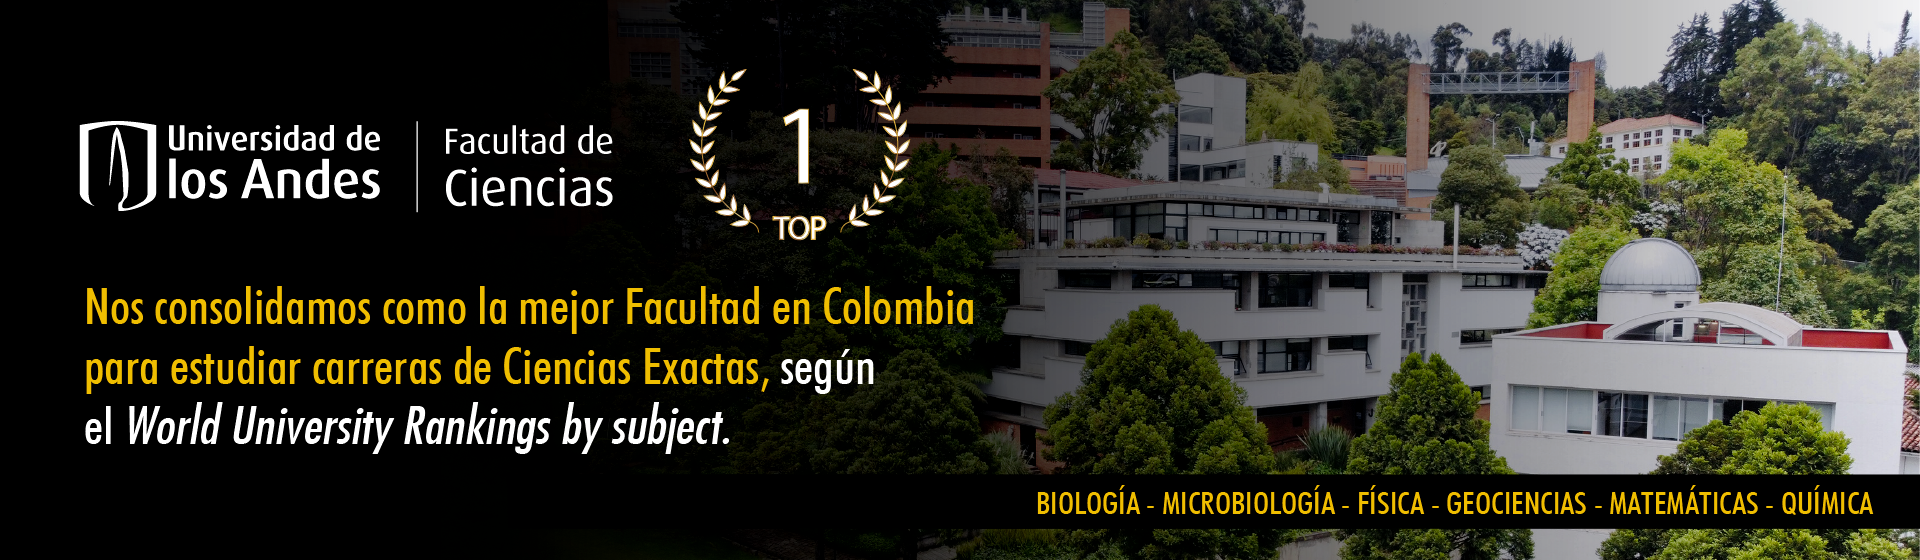 Top 1 - Facultad de Ciencias de Colombia | Uniandes